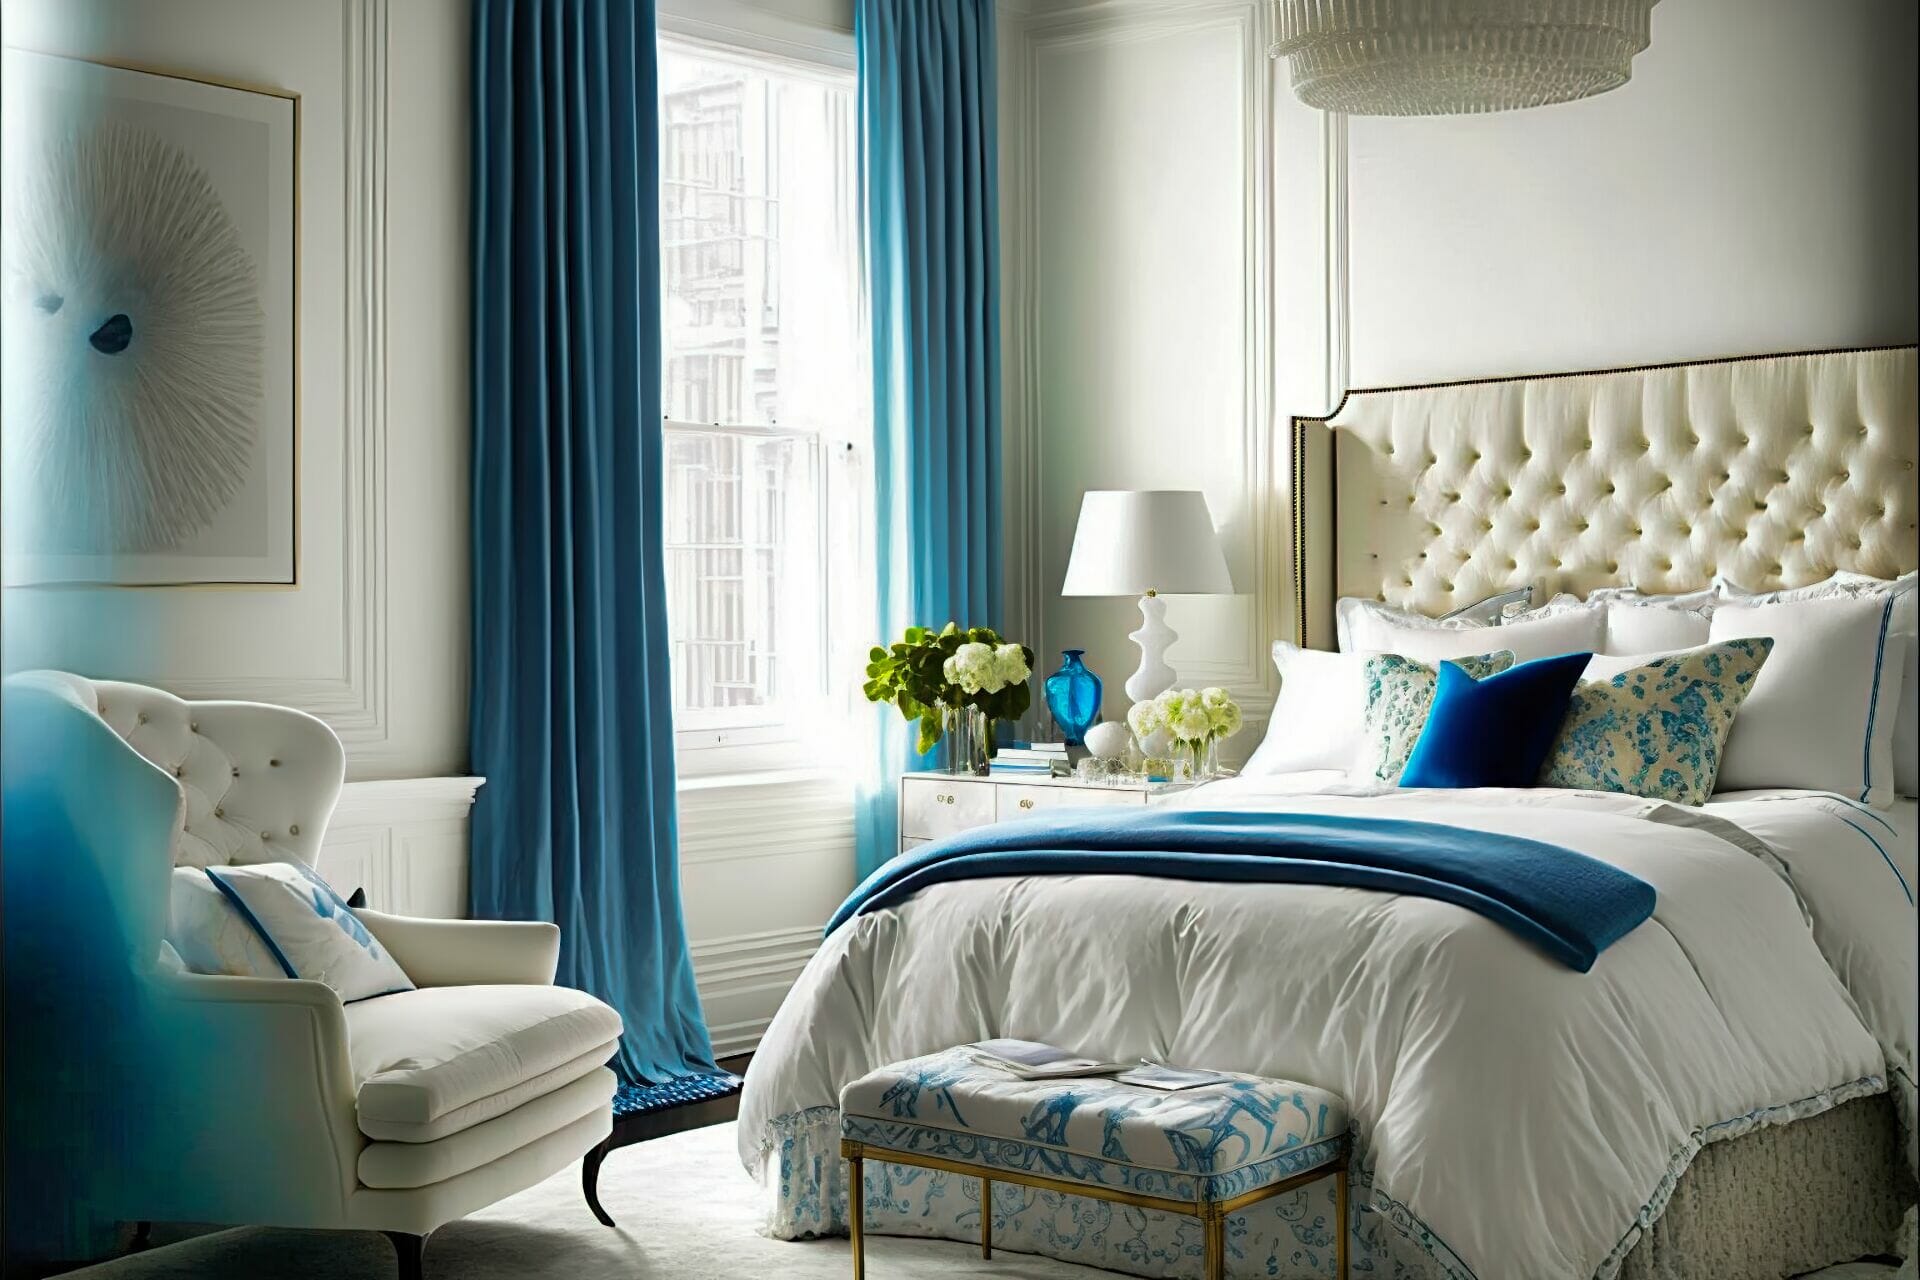 Dieses Helle Und Luftige Mediterrane Schlafzimmer Hat Ein Weißes Bettgestell Mit Blauem Kopfteil. Weiße Vorhänge Umrahmen Das Bett Und Ein Weißer Zottelteppich Sorgt Für Ein Luxuriöses Ambiente. Ein Weiß-Blauer Sessel Und Eine Ottomane Laden Zum Entspannen Ein.